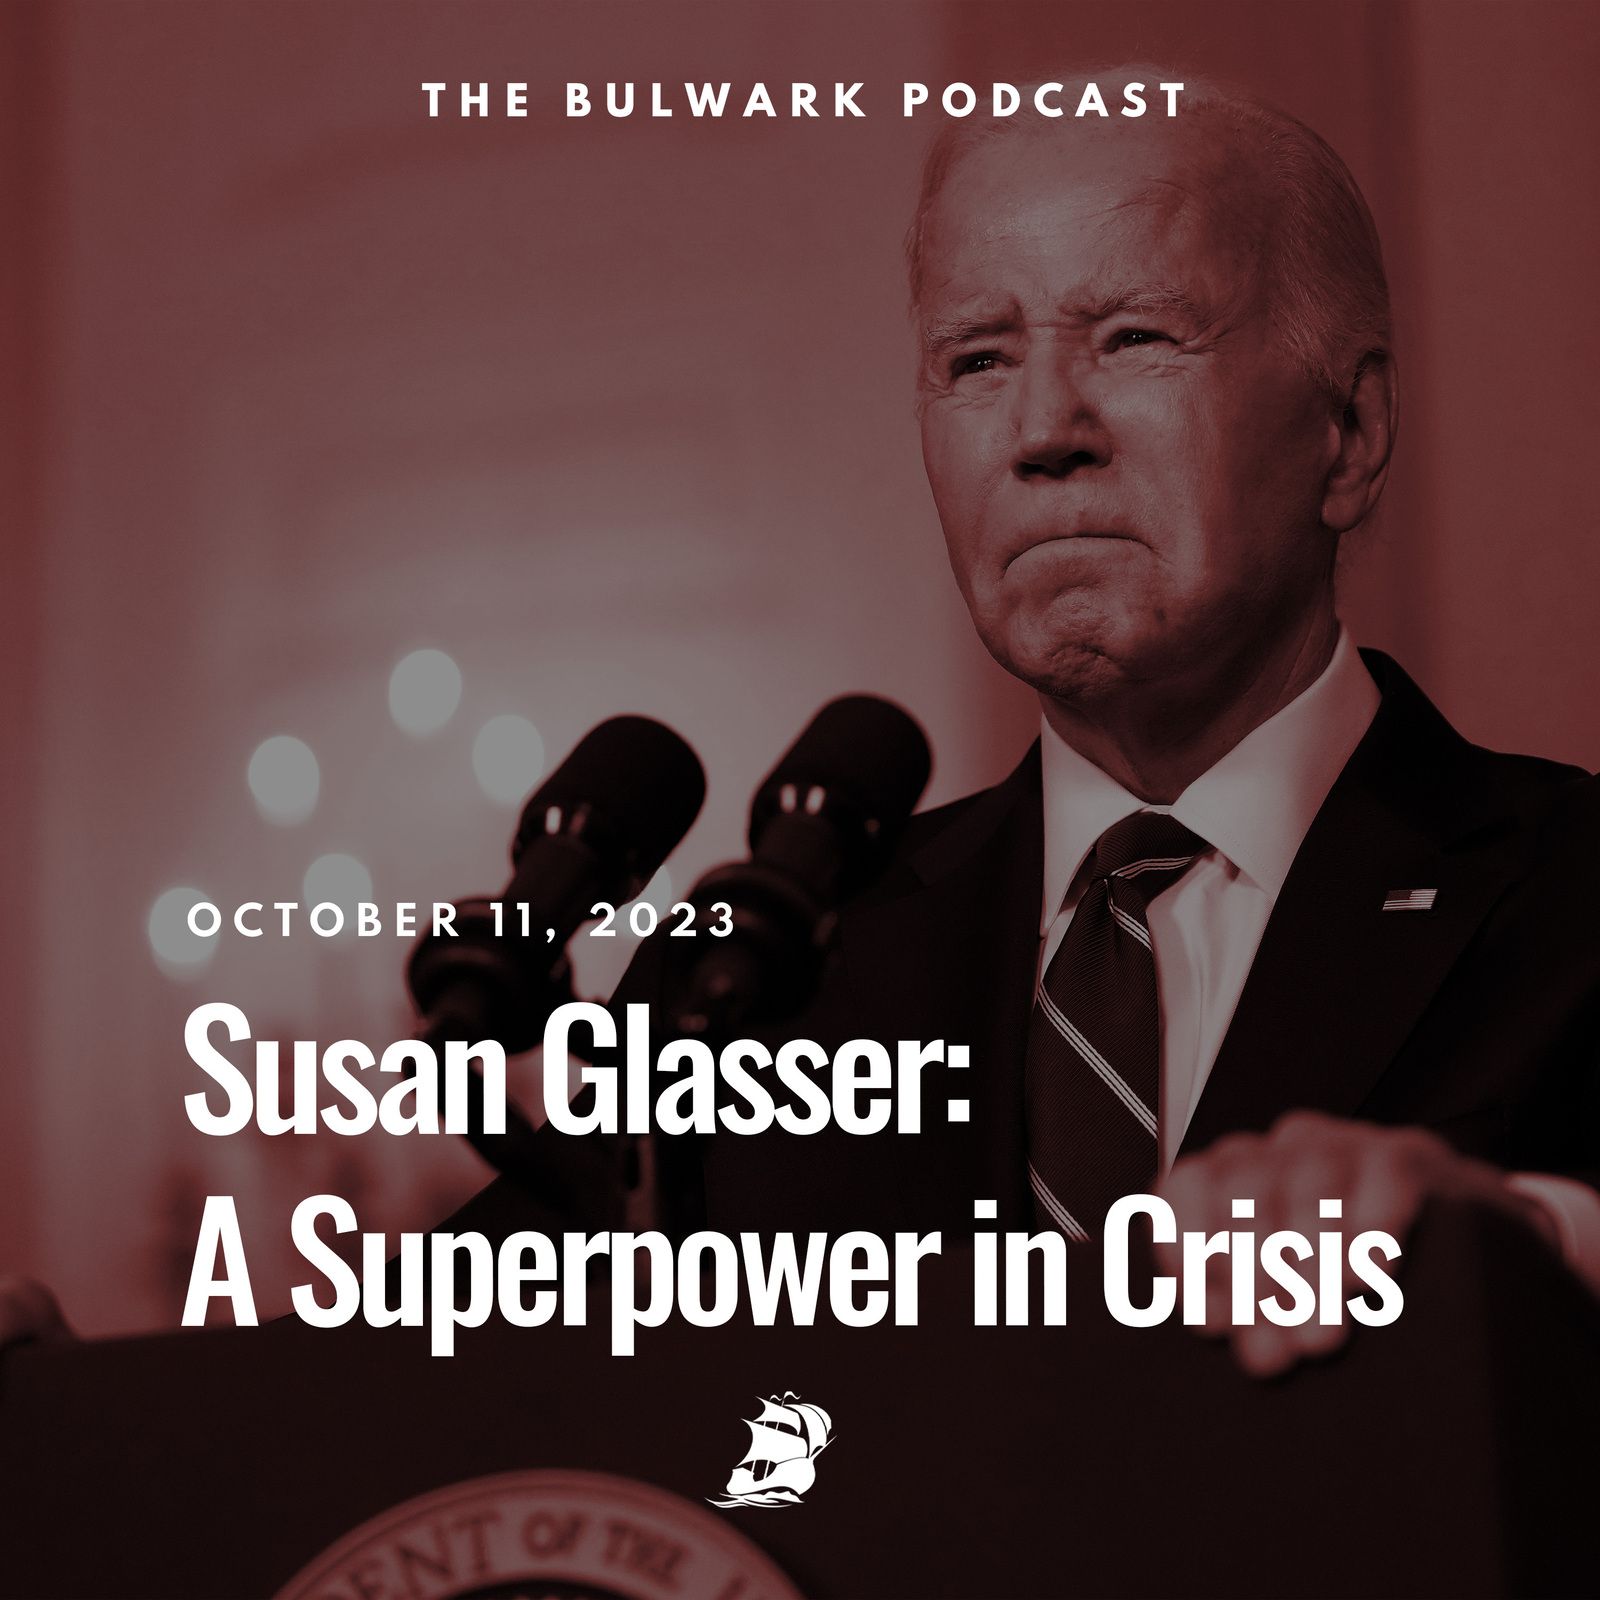 Susan Glasser: A Superpower in Crisis